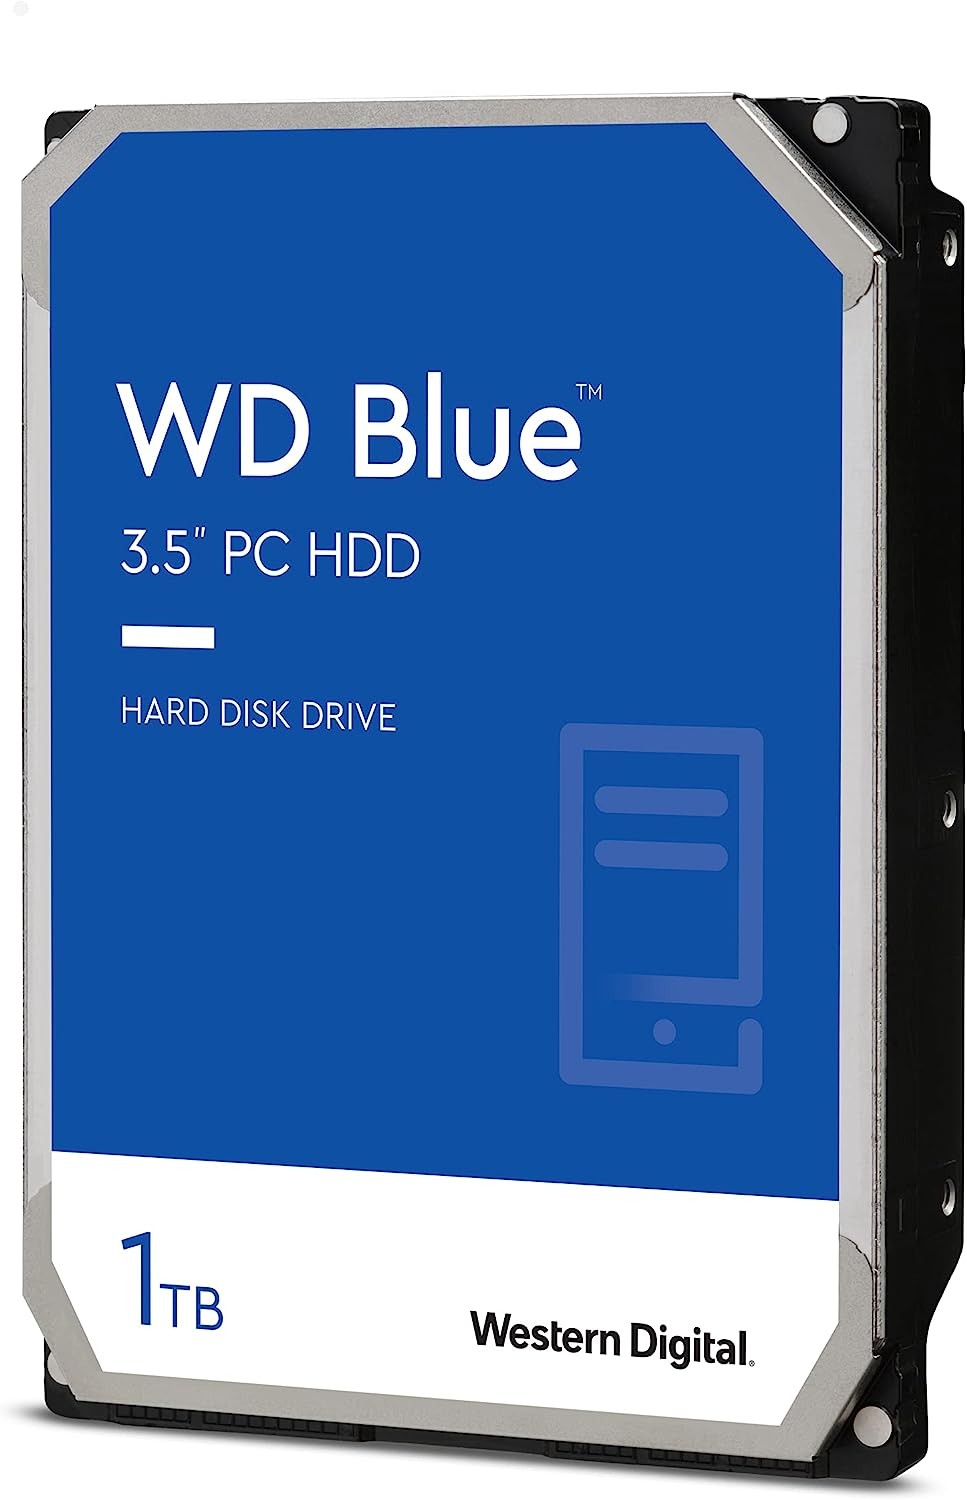 WD Blue WD10EZEX - Hard drive - 1 TB